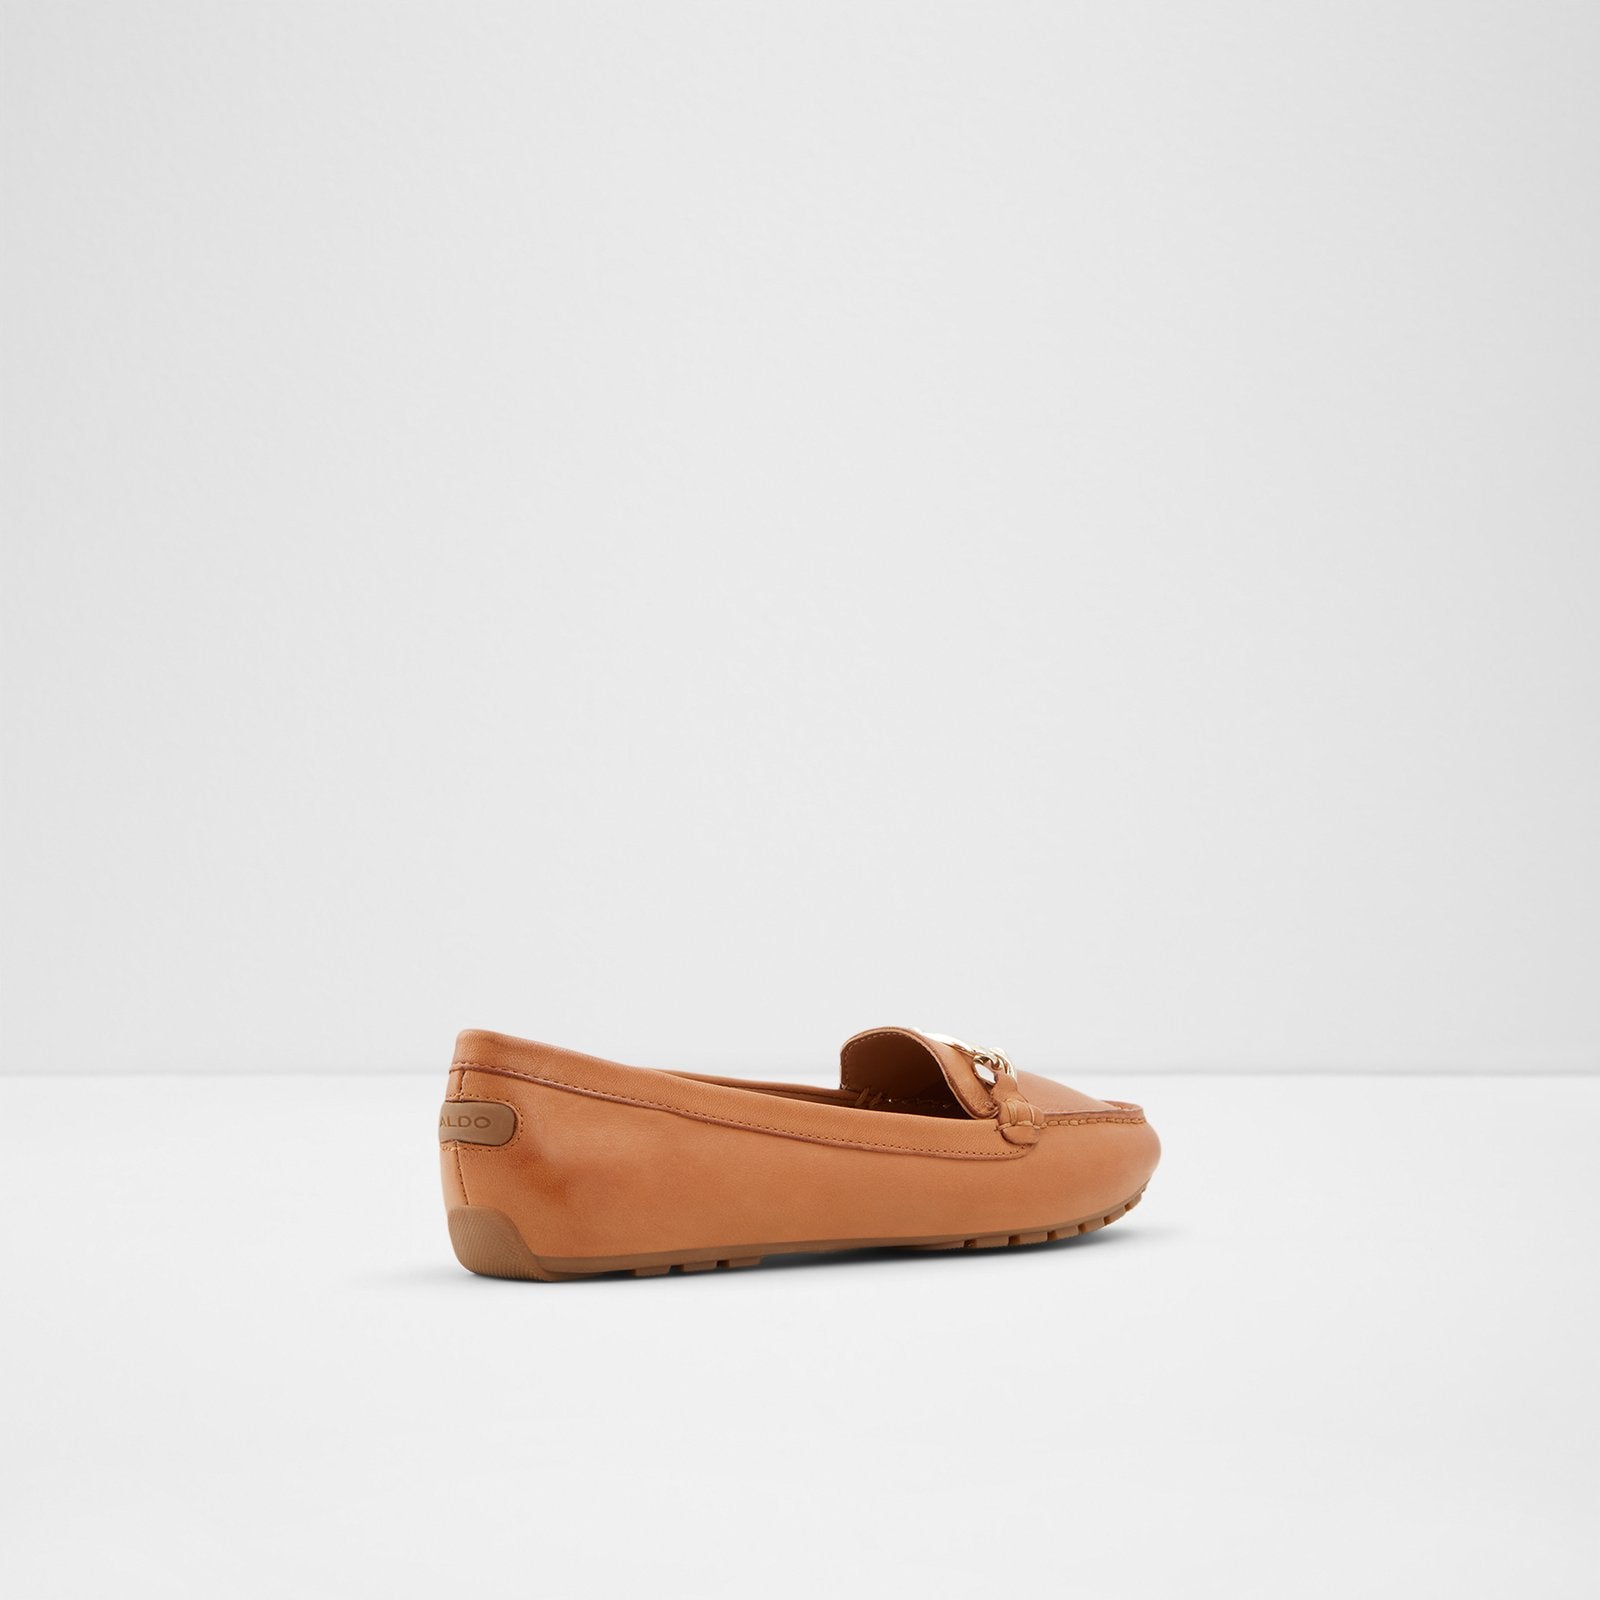 Marettini Women Shoes - Cognac - ALDO KSA